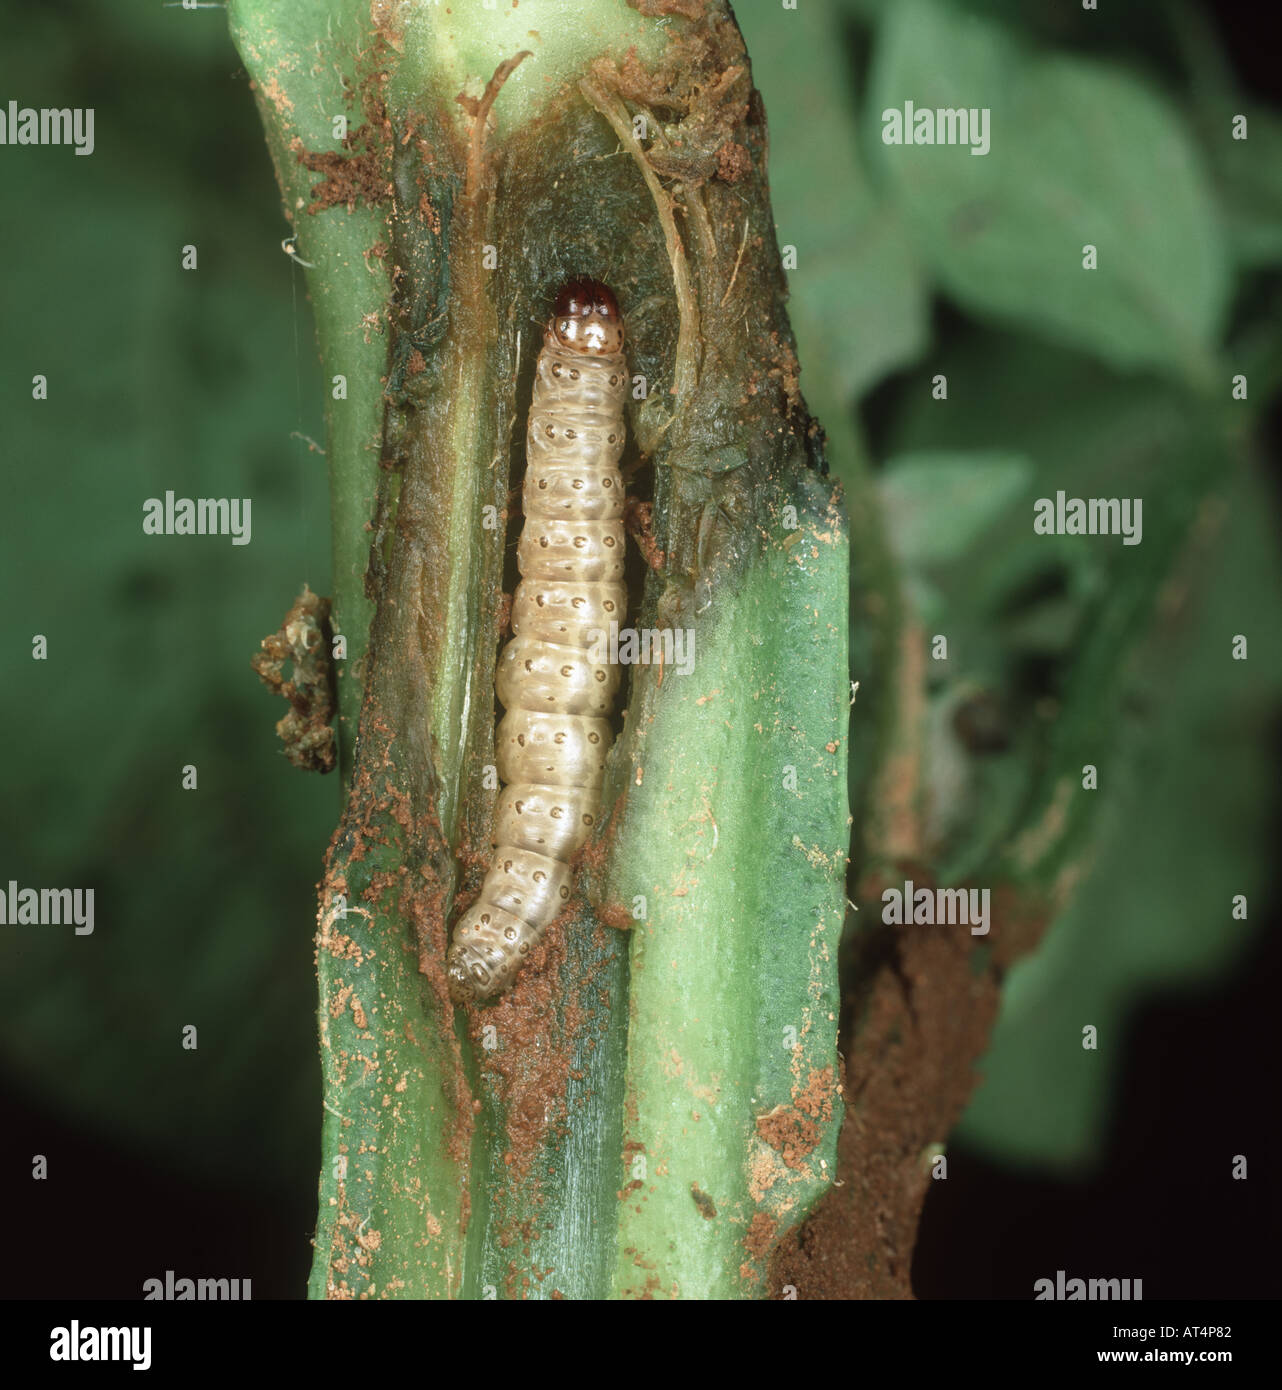 Piralide del mais Ostrinia nubialis caterpillar nel gambo di una pianta di patata in Canada Foto Stock